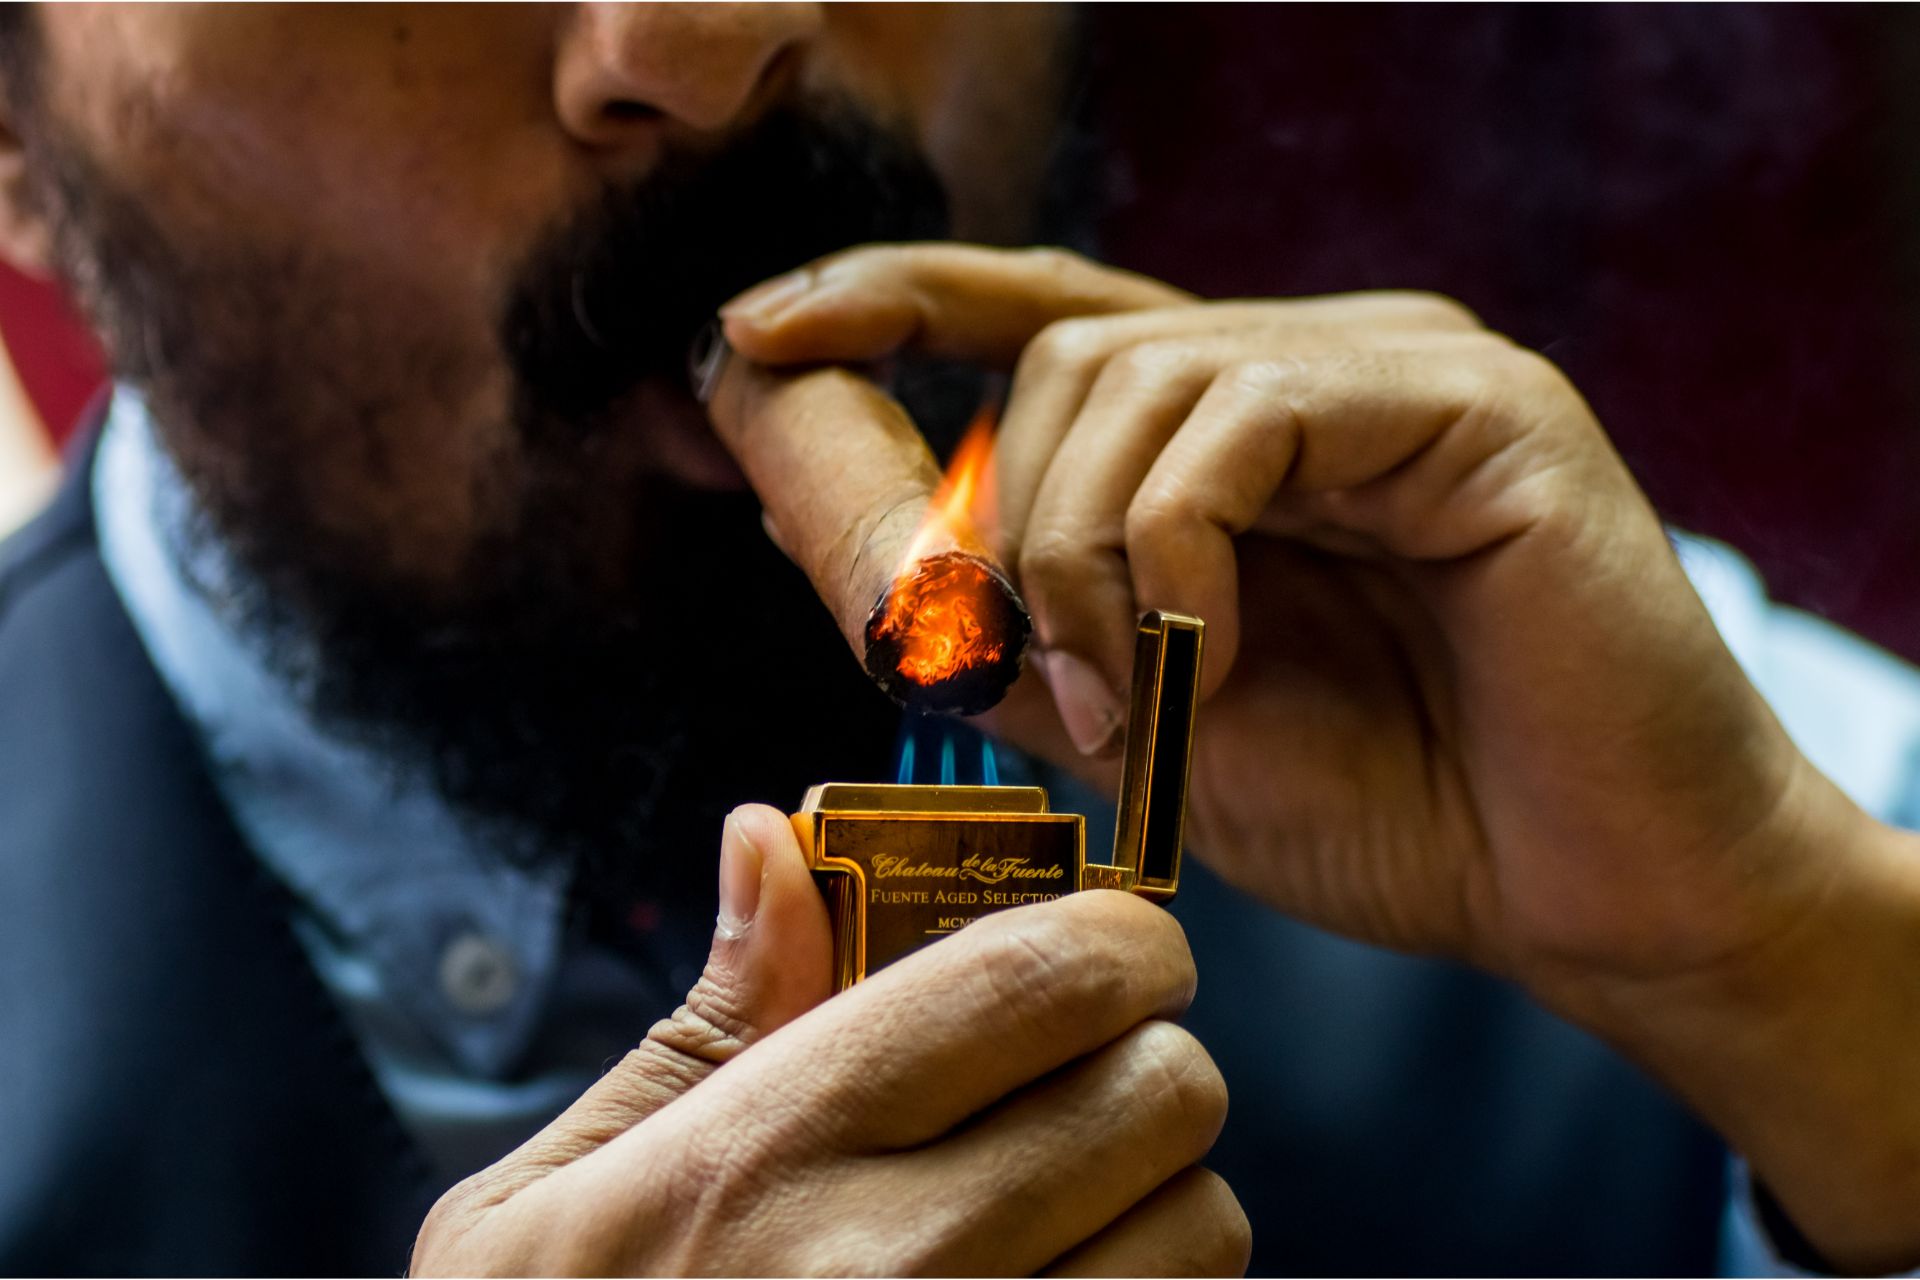 Man lighting cigar.